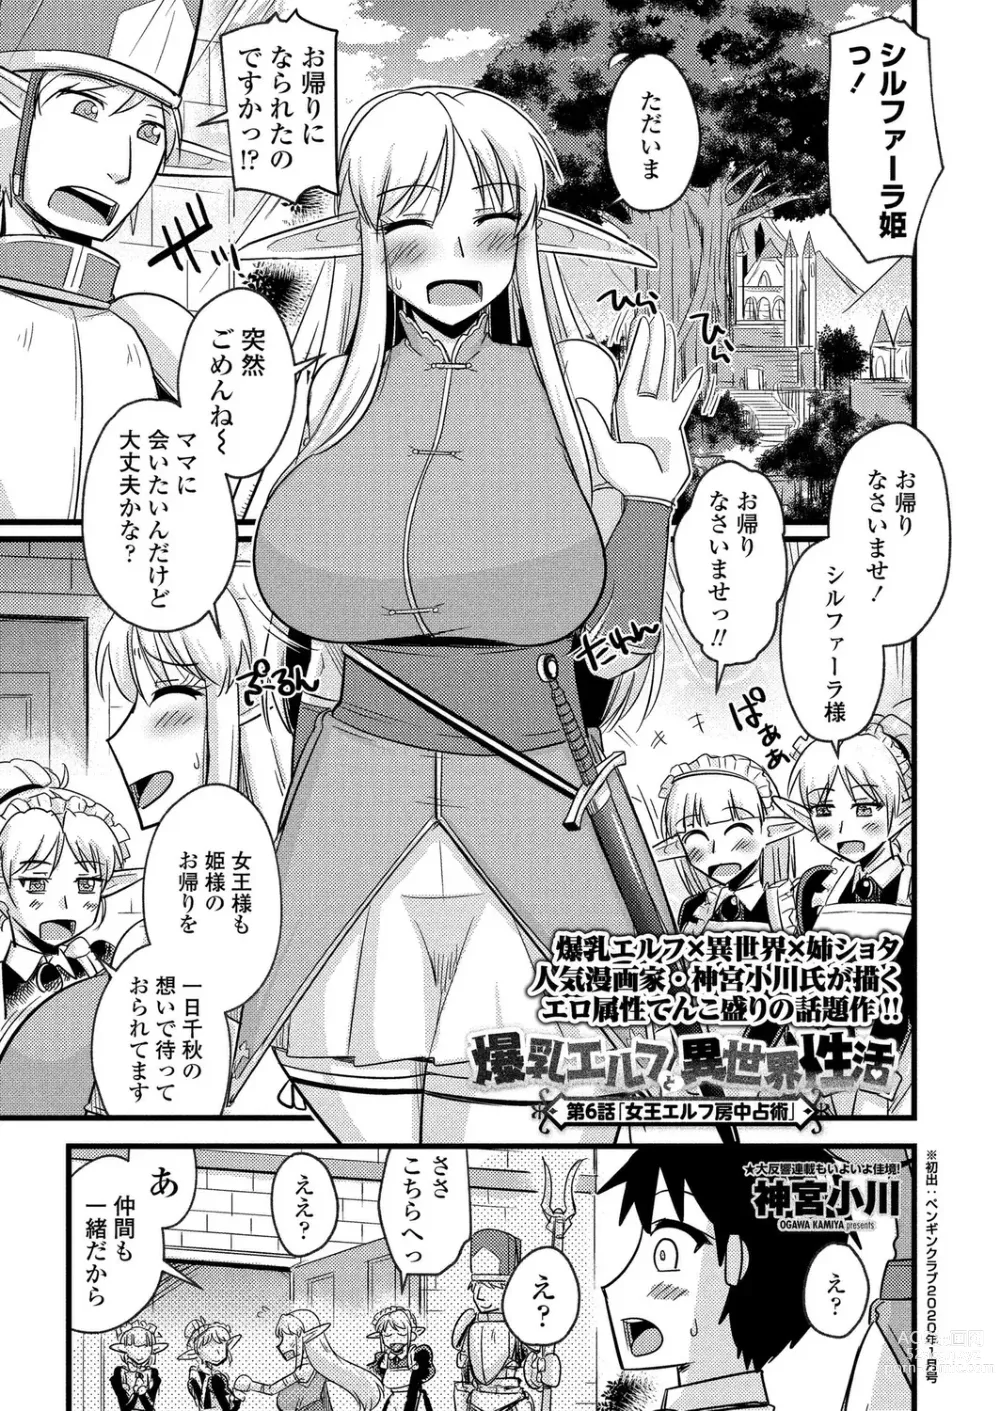 Page 194 of manga BugBug 2023-08